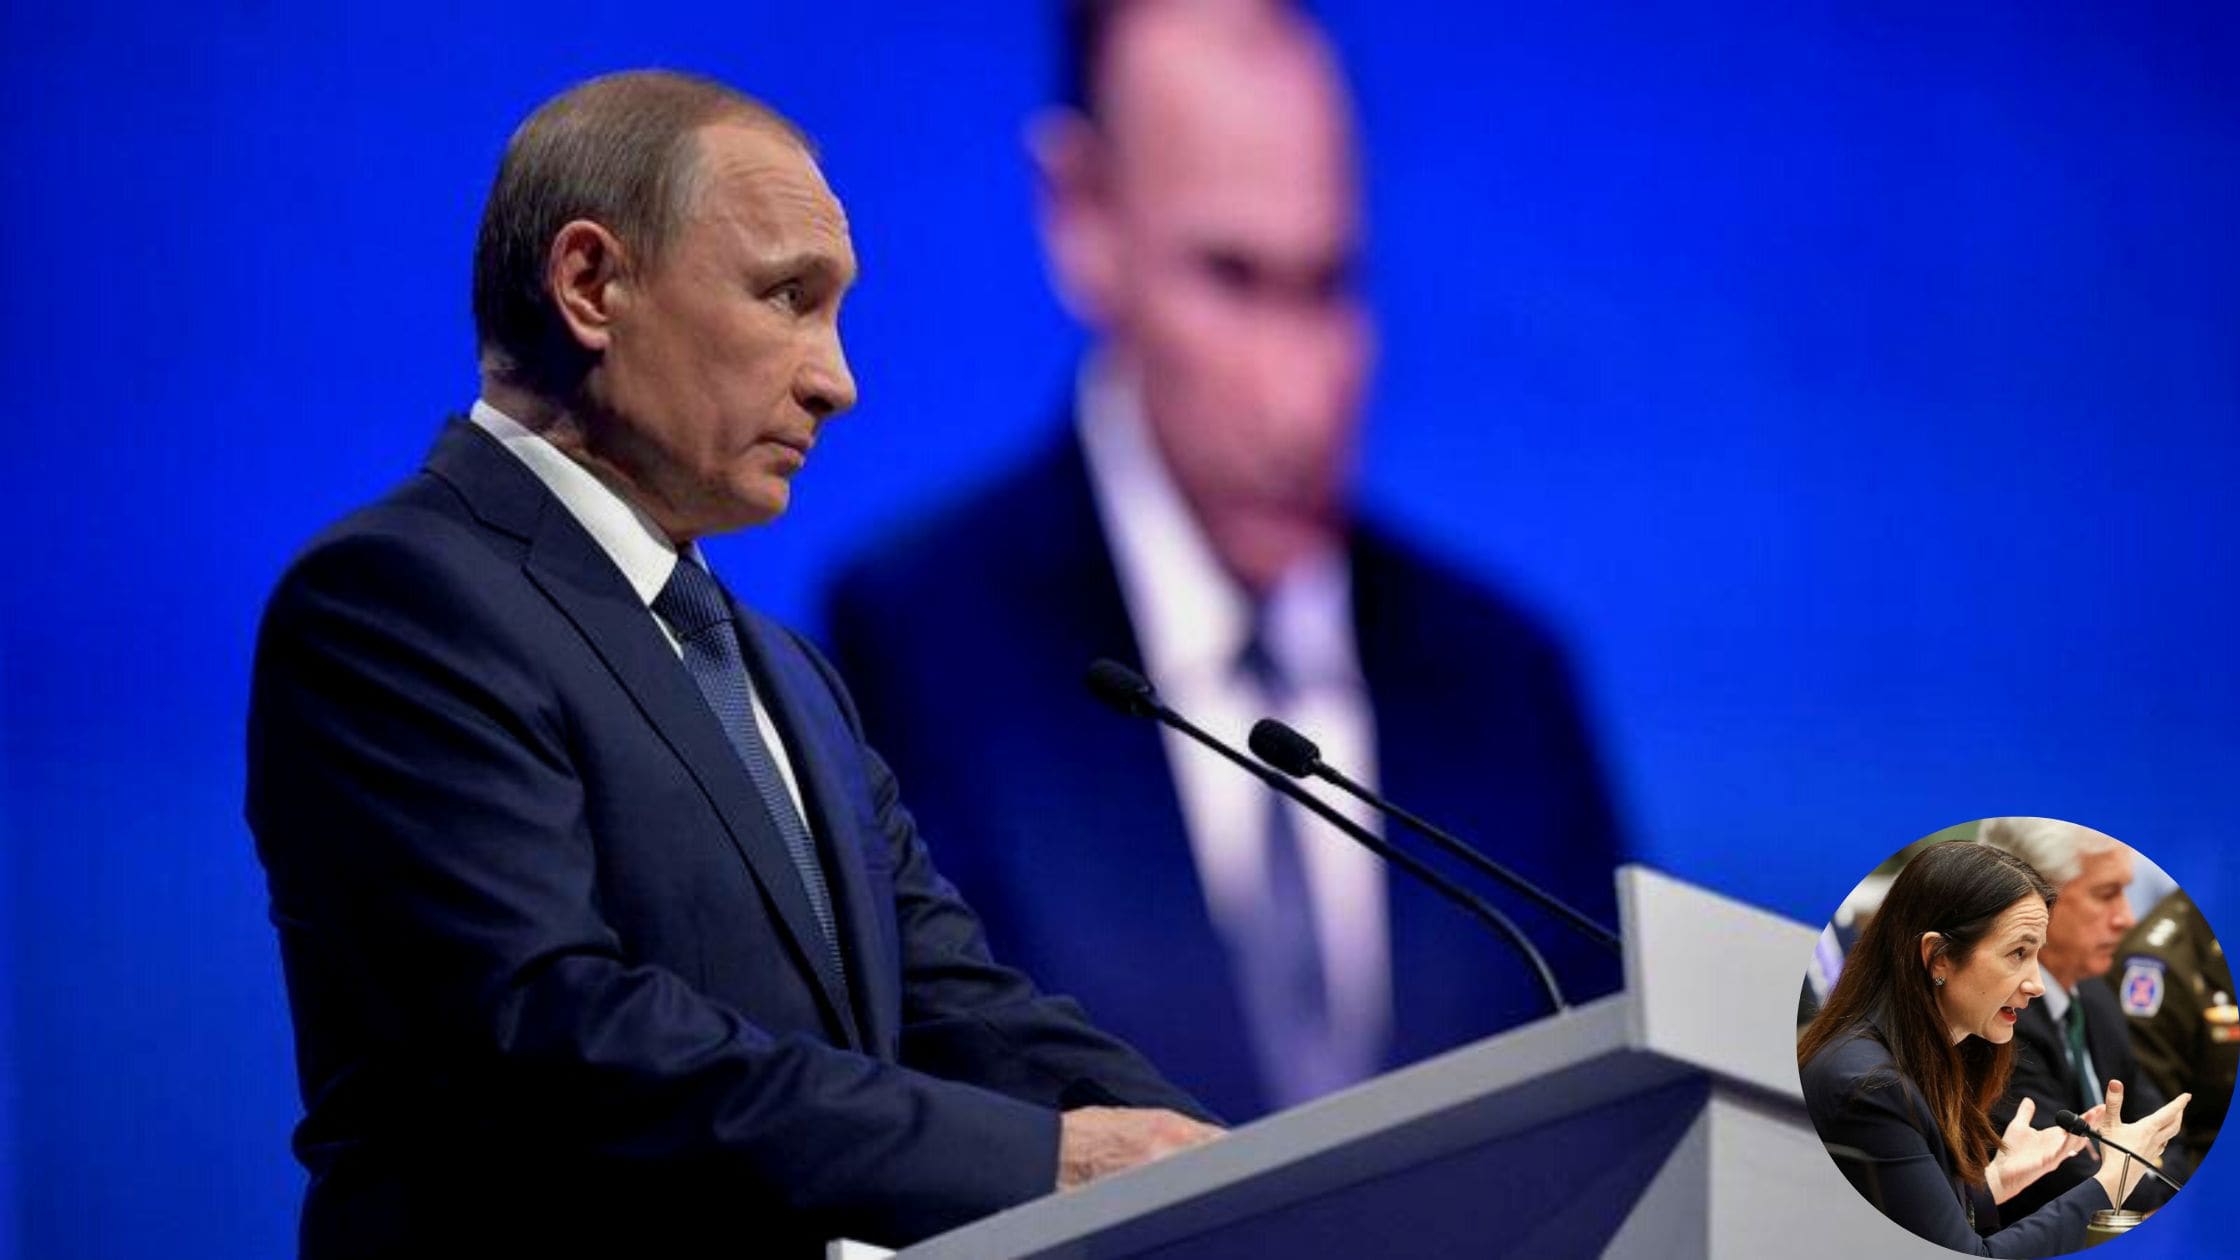 Vladimir Putin Better Informed Now About Ukraine War